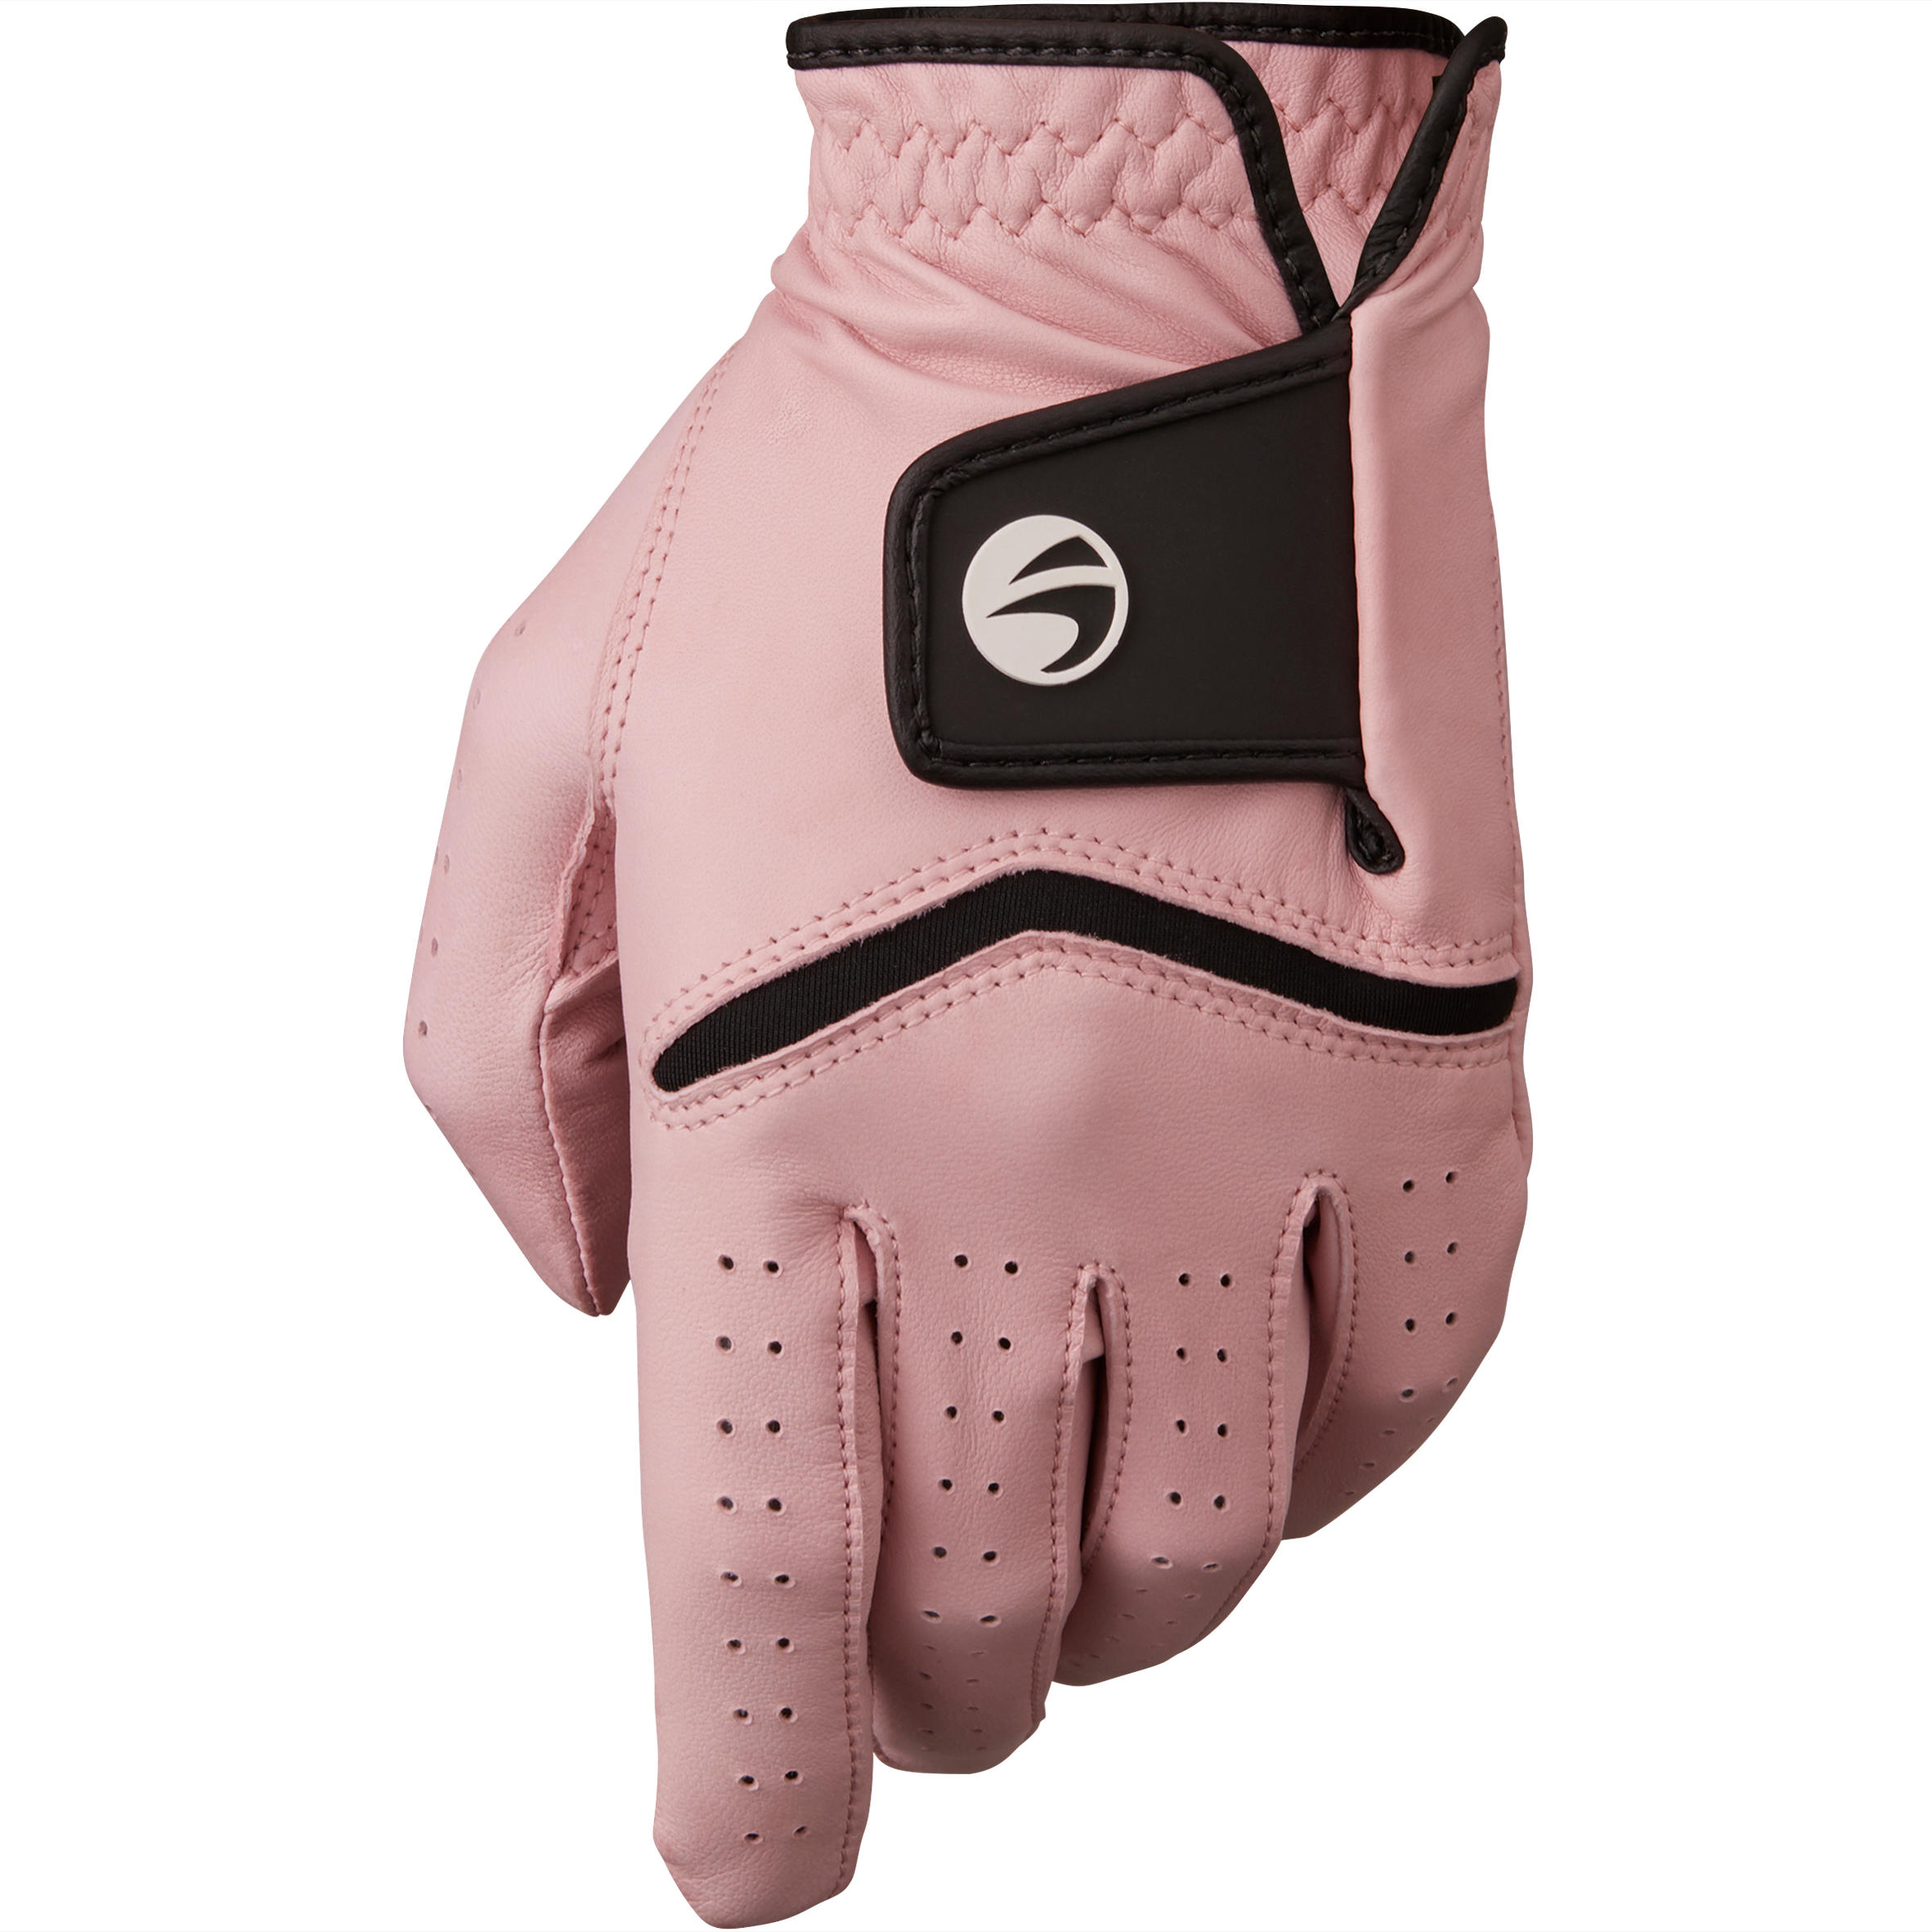 [ส่งฟรี ] ถุงมือกอล์ฟผู้หญิงถนัดขวารุ่น 500 สำหรับผู้เล่นขั้นสูงและผู้เล่นที่เชี่ยวชาญ (สีชมพู) 500 Women's Golf Advanced and Expert Glove - Right-Hander Pink Golf glove women Golf gloves ถุงมือกอล์ฟหญิง ถุงมือกอฟหญิง